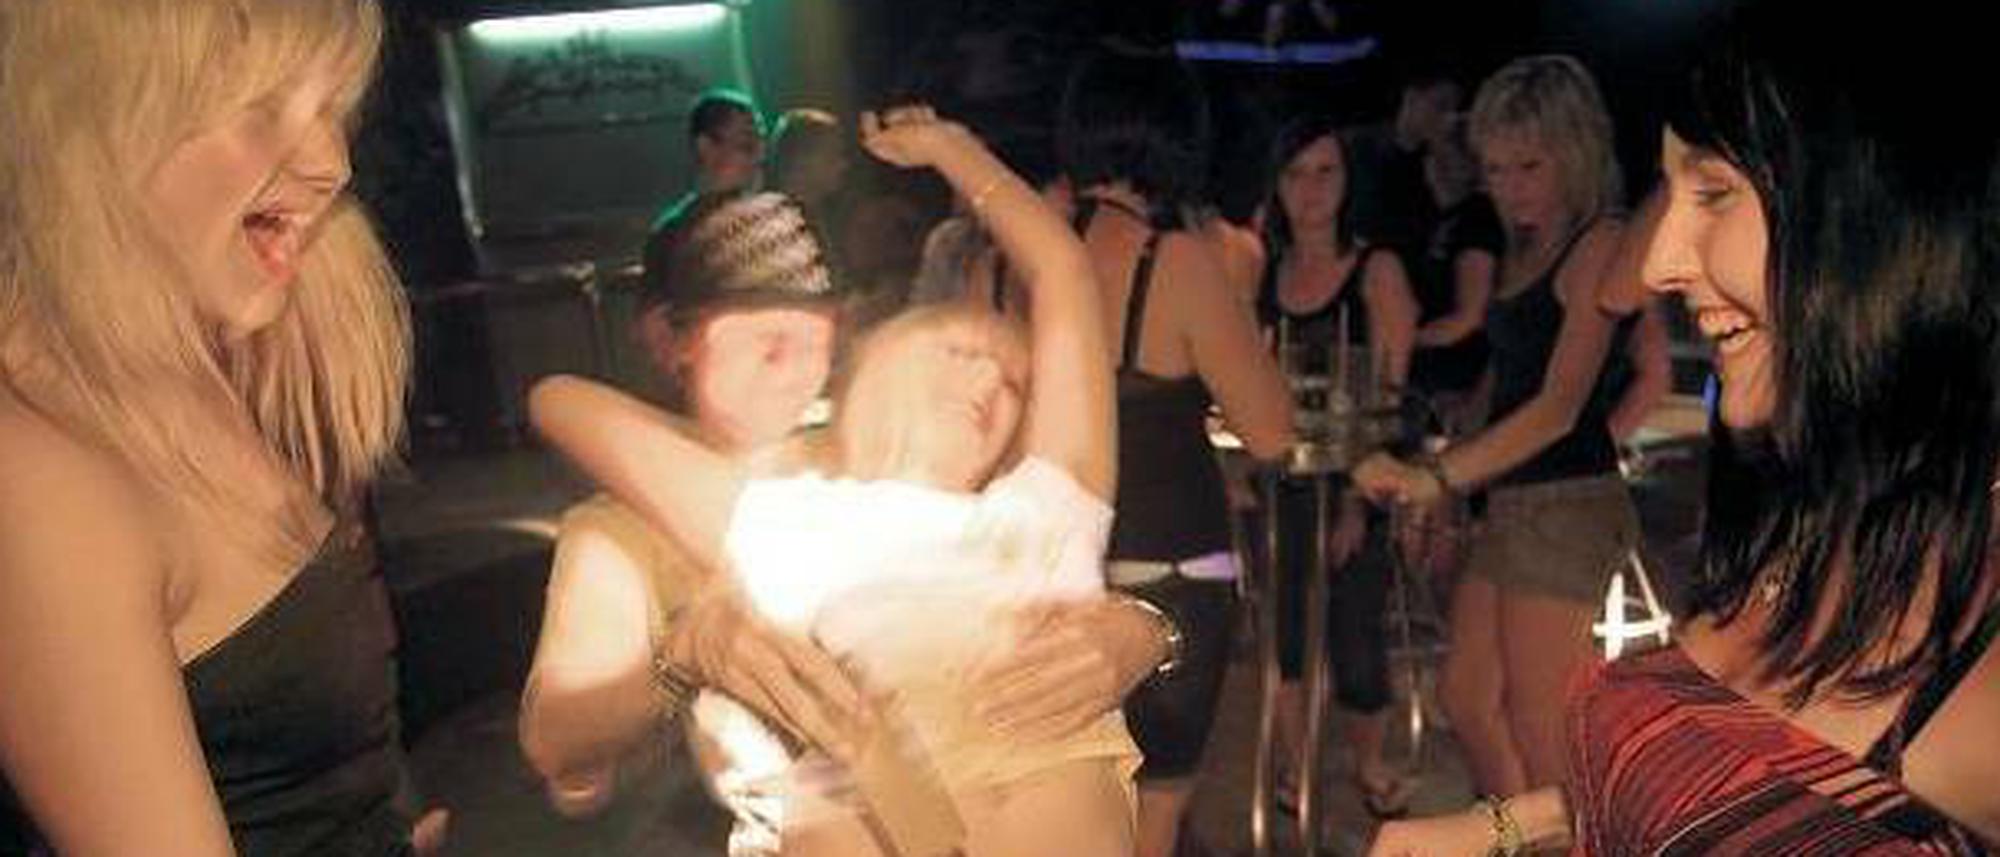 Frau Party betrunken nackt Sexbilder Hq